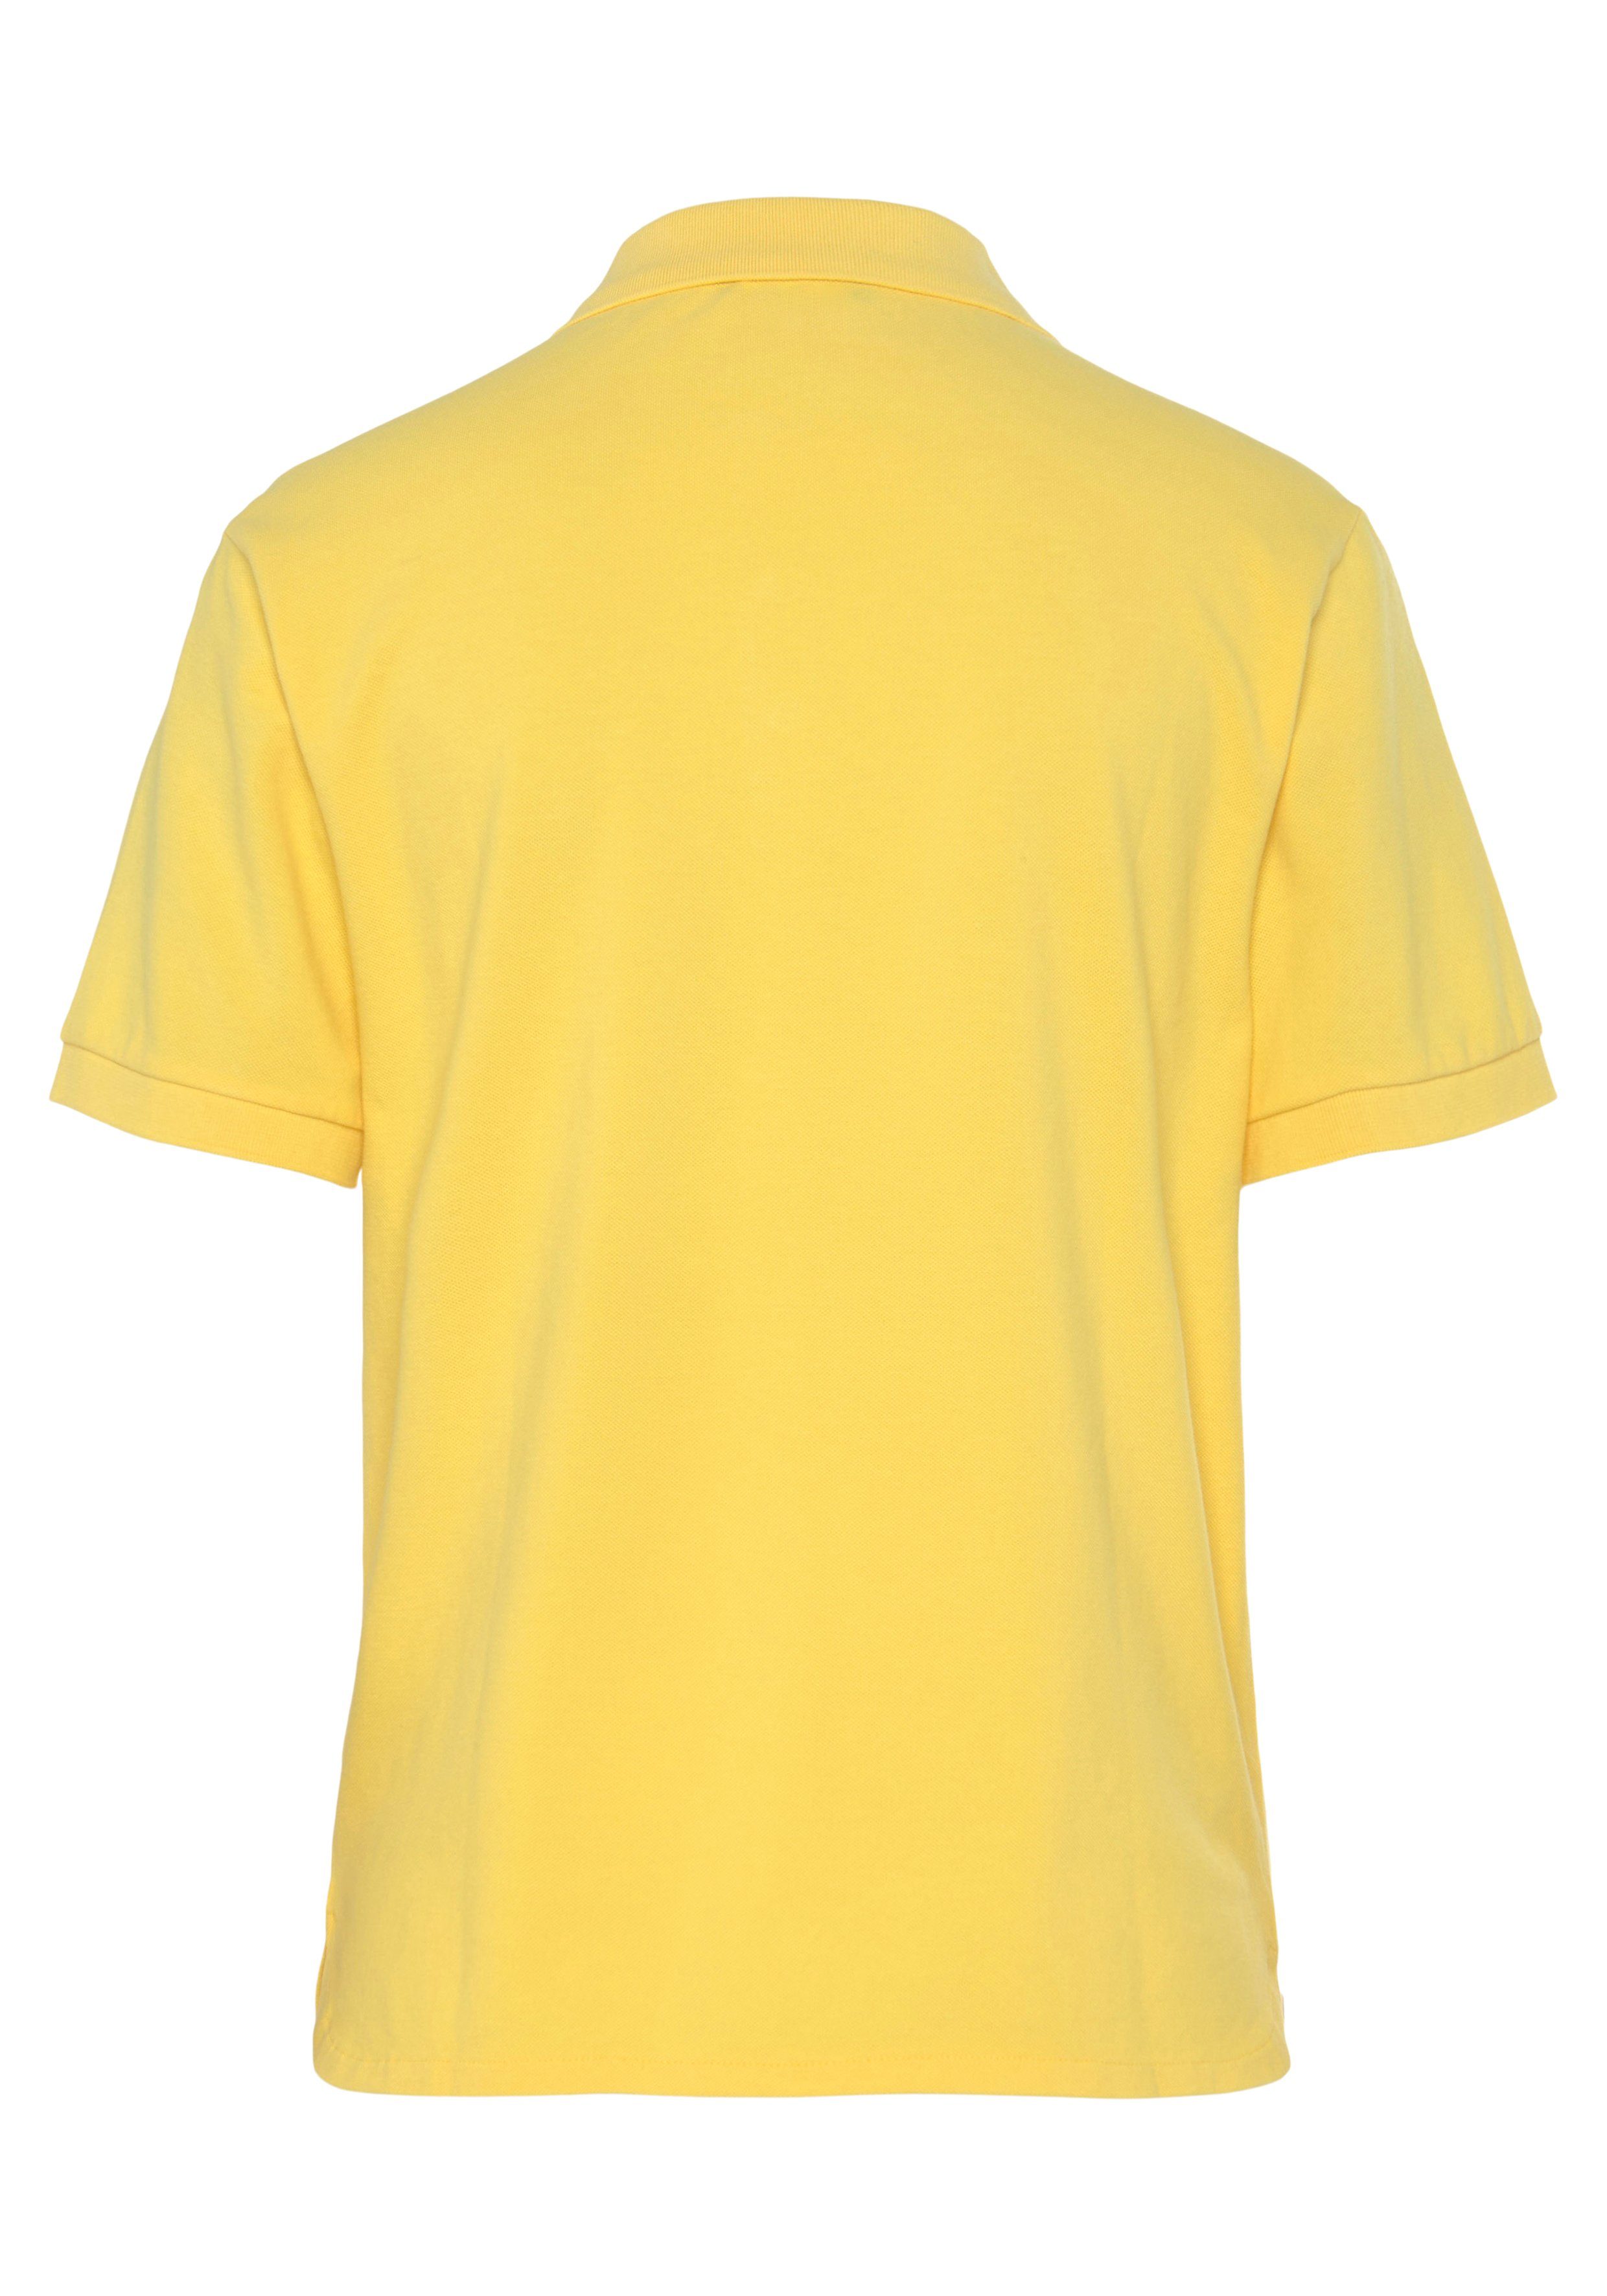 United Colors Benetton Knöpfen Poloshirt perlmuttfarbenen gelb mit of